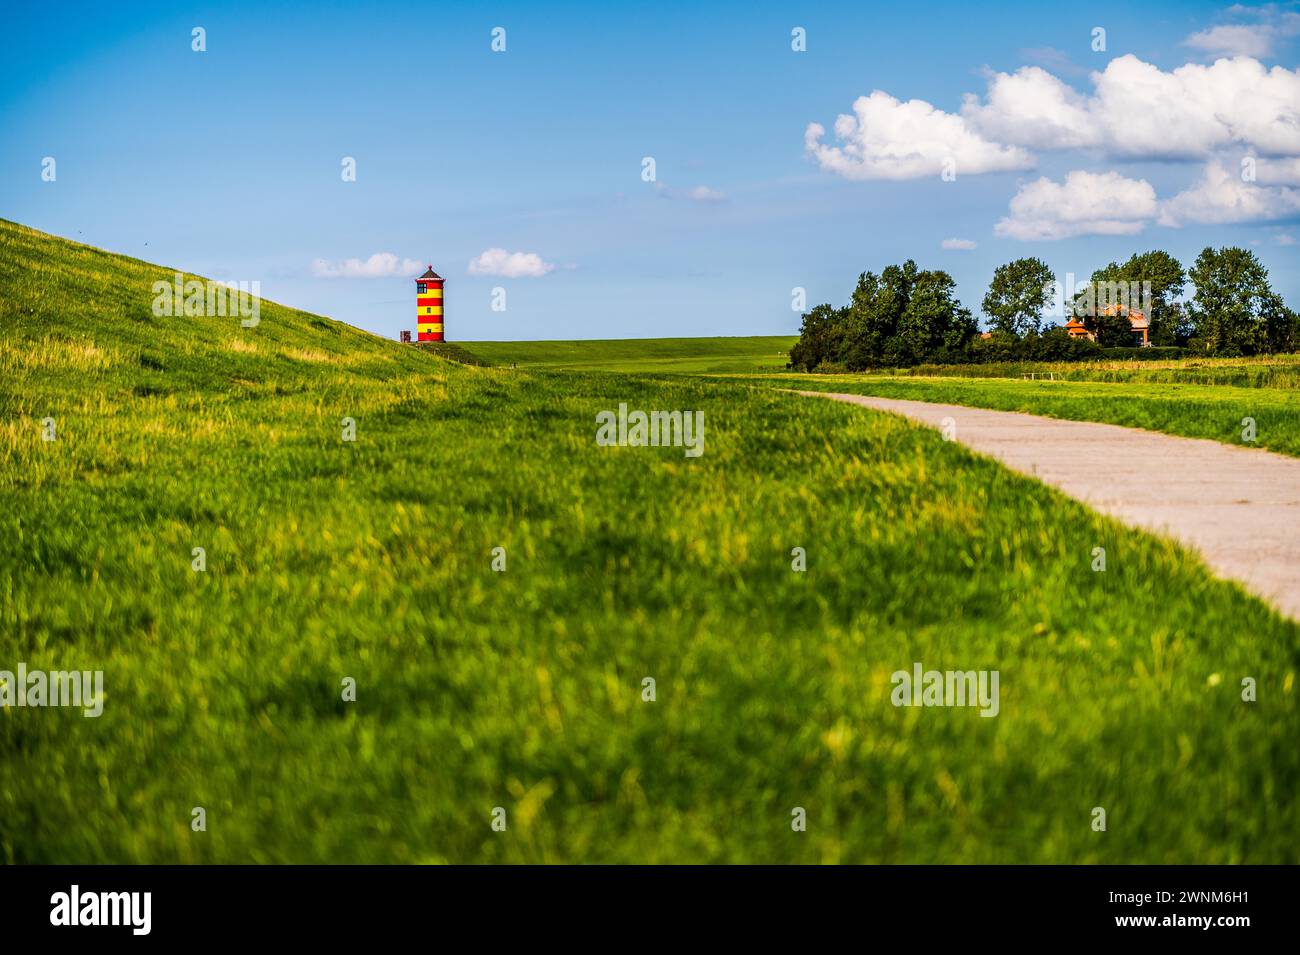 Un faro colorato sorge su una collina verde sotto un cielo blu con nuvole, il faro di Pilsum, Greetsiel, Norden, Frisia orientale, bassa Sassonia Foto Stock